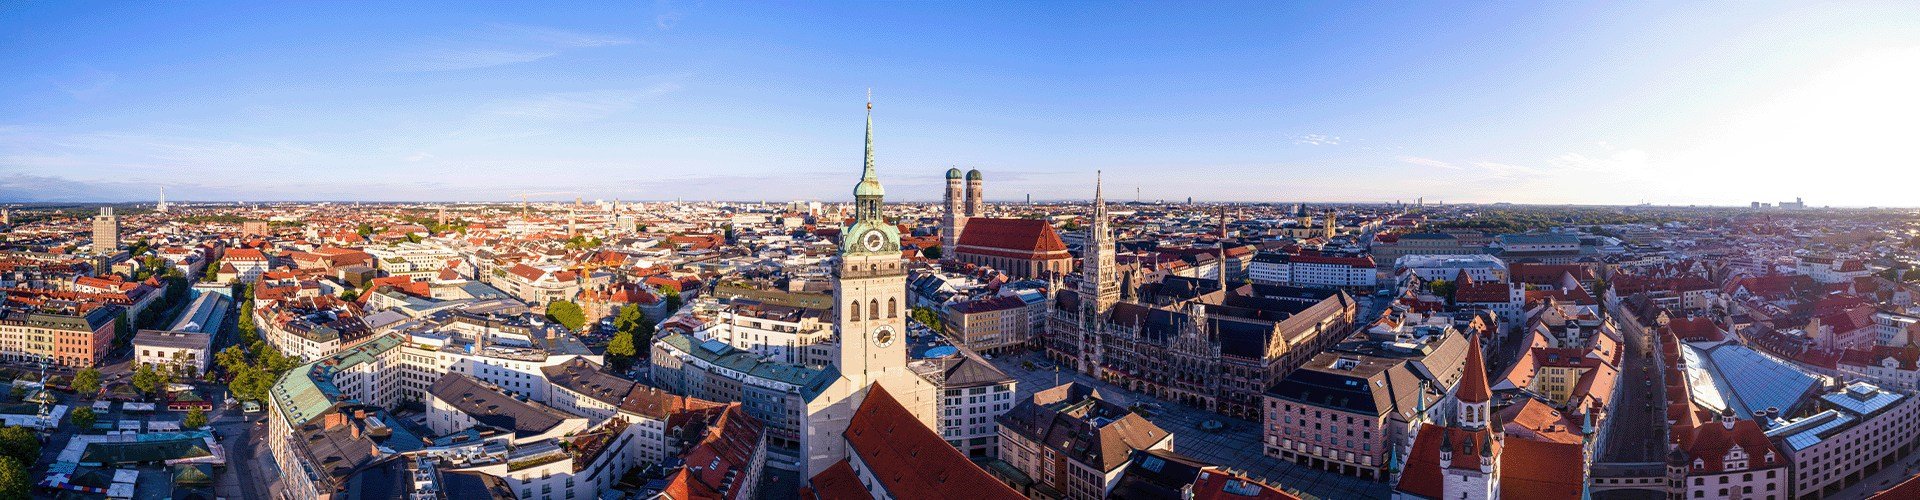 Top Sehenswürdigkeiten für Familien in München